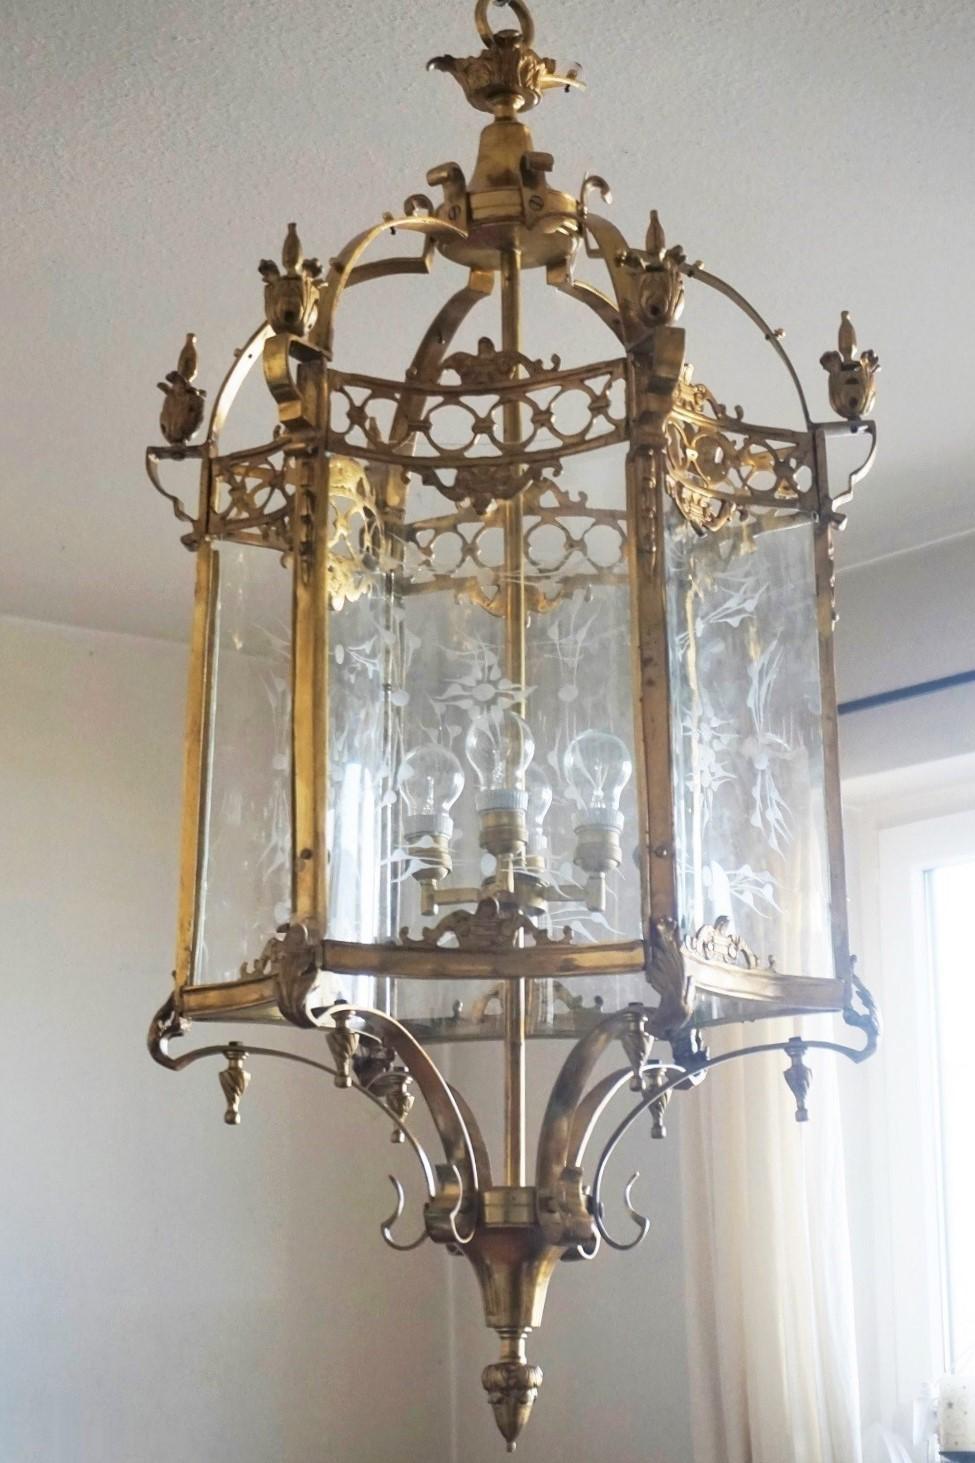 Très grande lanterne hexagonale à quatre lumières de style Louis XVI, France, 1920-1930. La lanterne est fabriquée en laiton massif avec des détails en bronze moulé intégrés, six côtés incurvés avec des panneaux en verre découpé incurvés. Chaîne et